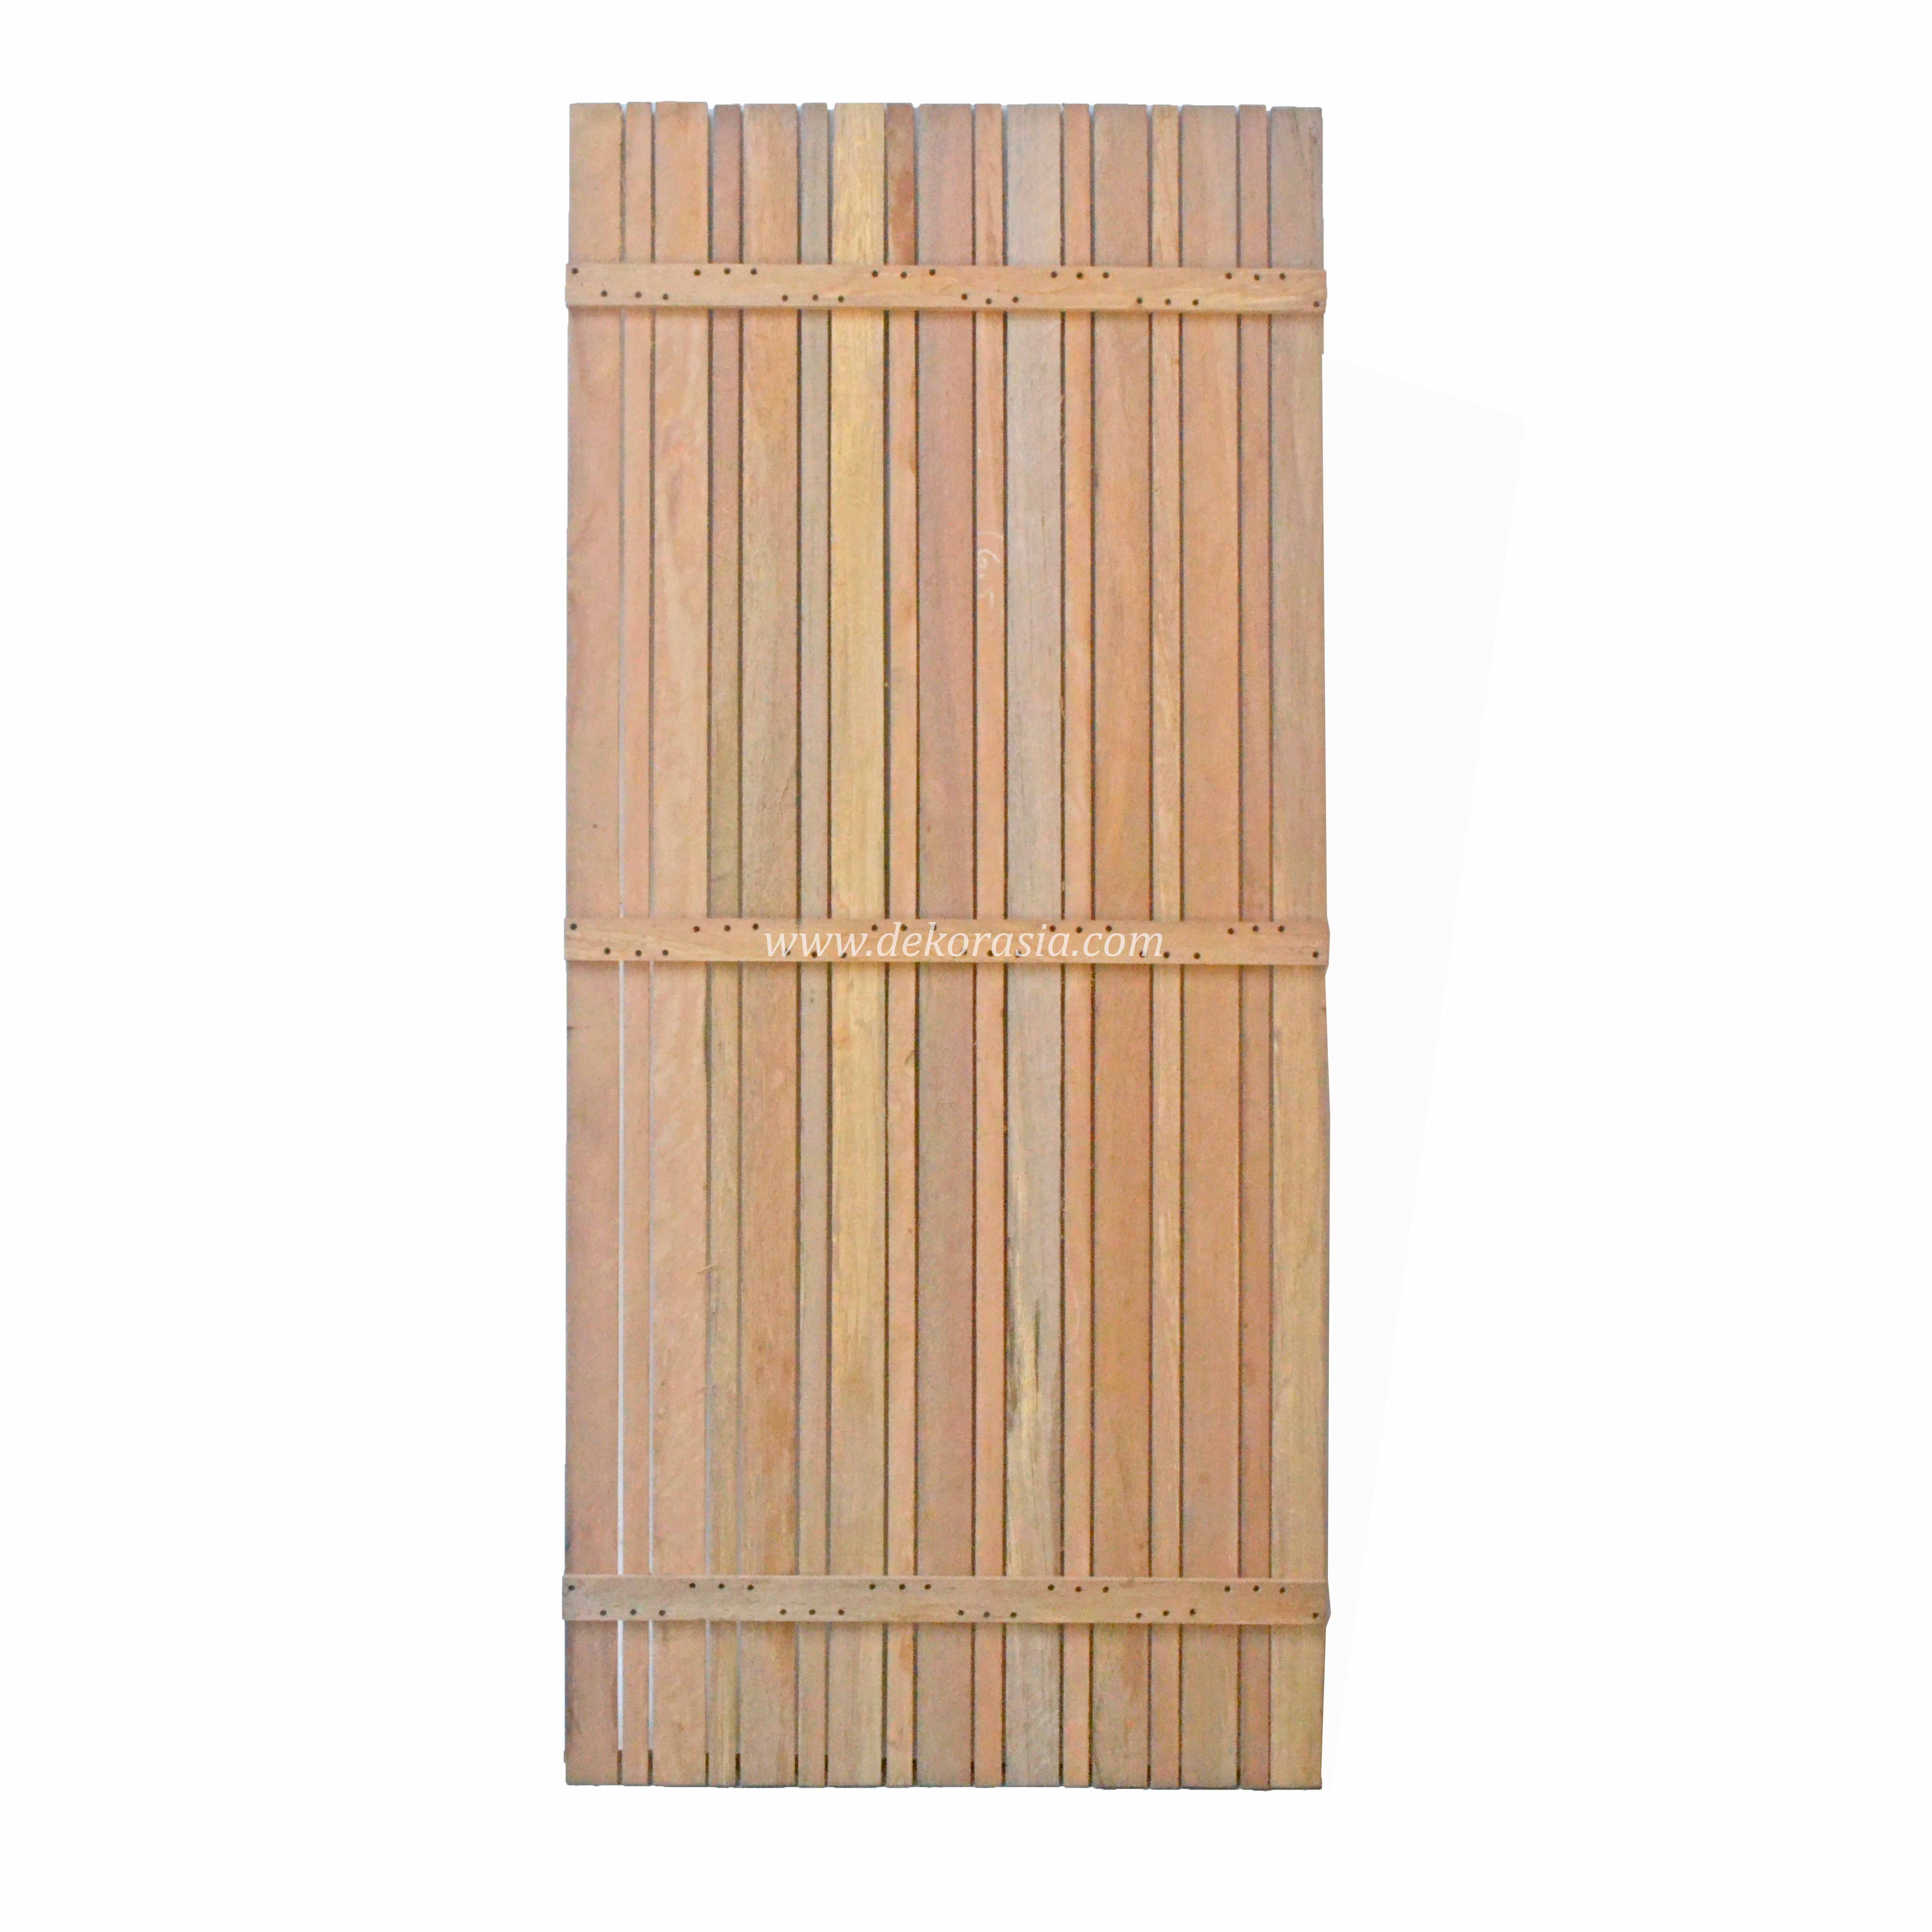 Variation Vertical Kruing Wood Screen, Wood Panels (Dipterocarpus kunstleri), Wood Fence Best Wooden Screen - Type C